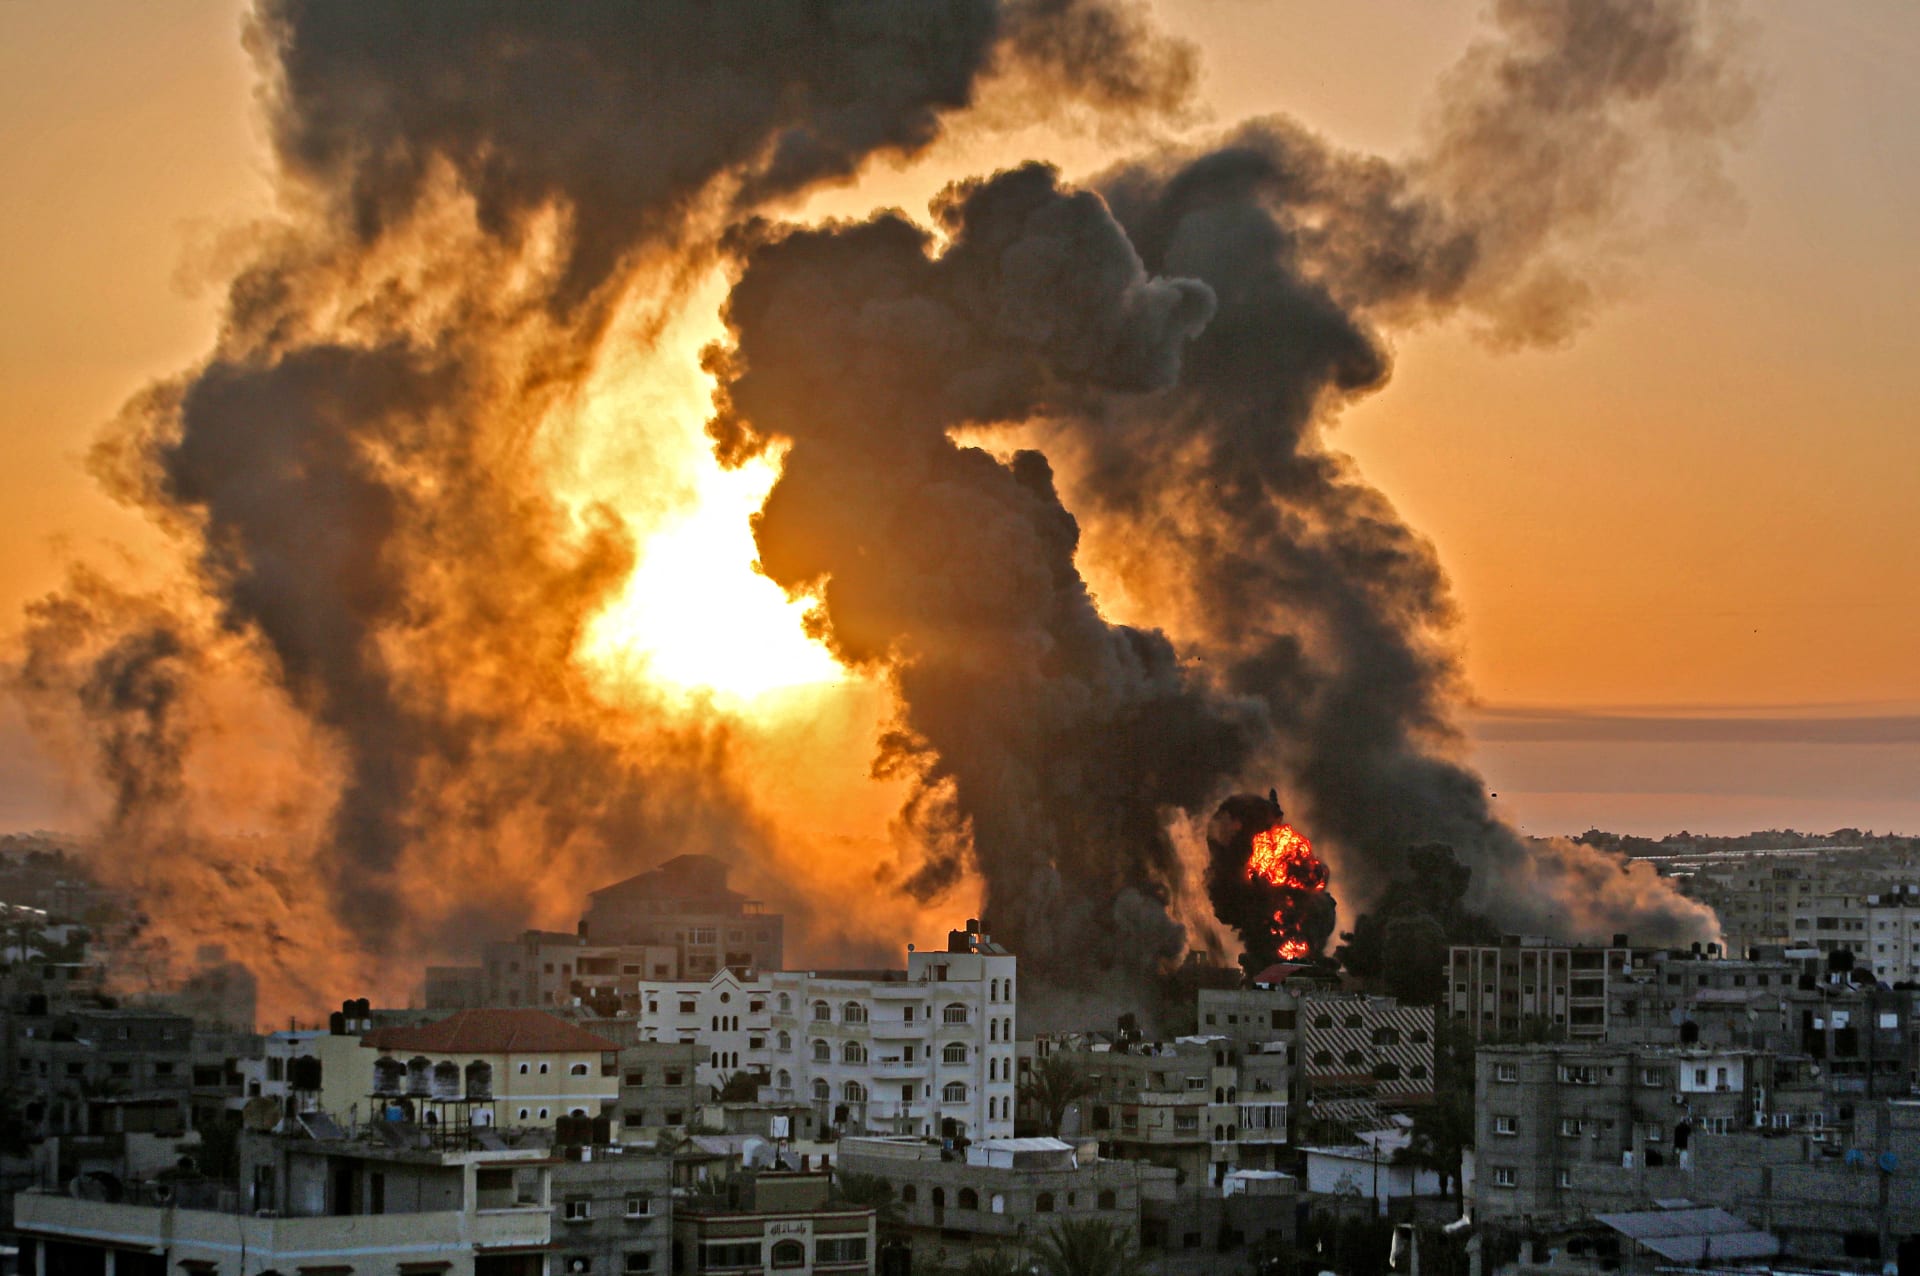 خبراء فلسطينيون: وحشية الإبادة الجماعية على غزة أسقطت القناع عن وجه إسرائيل الحقيقي